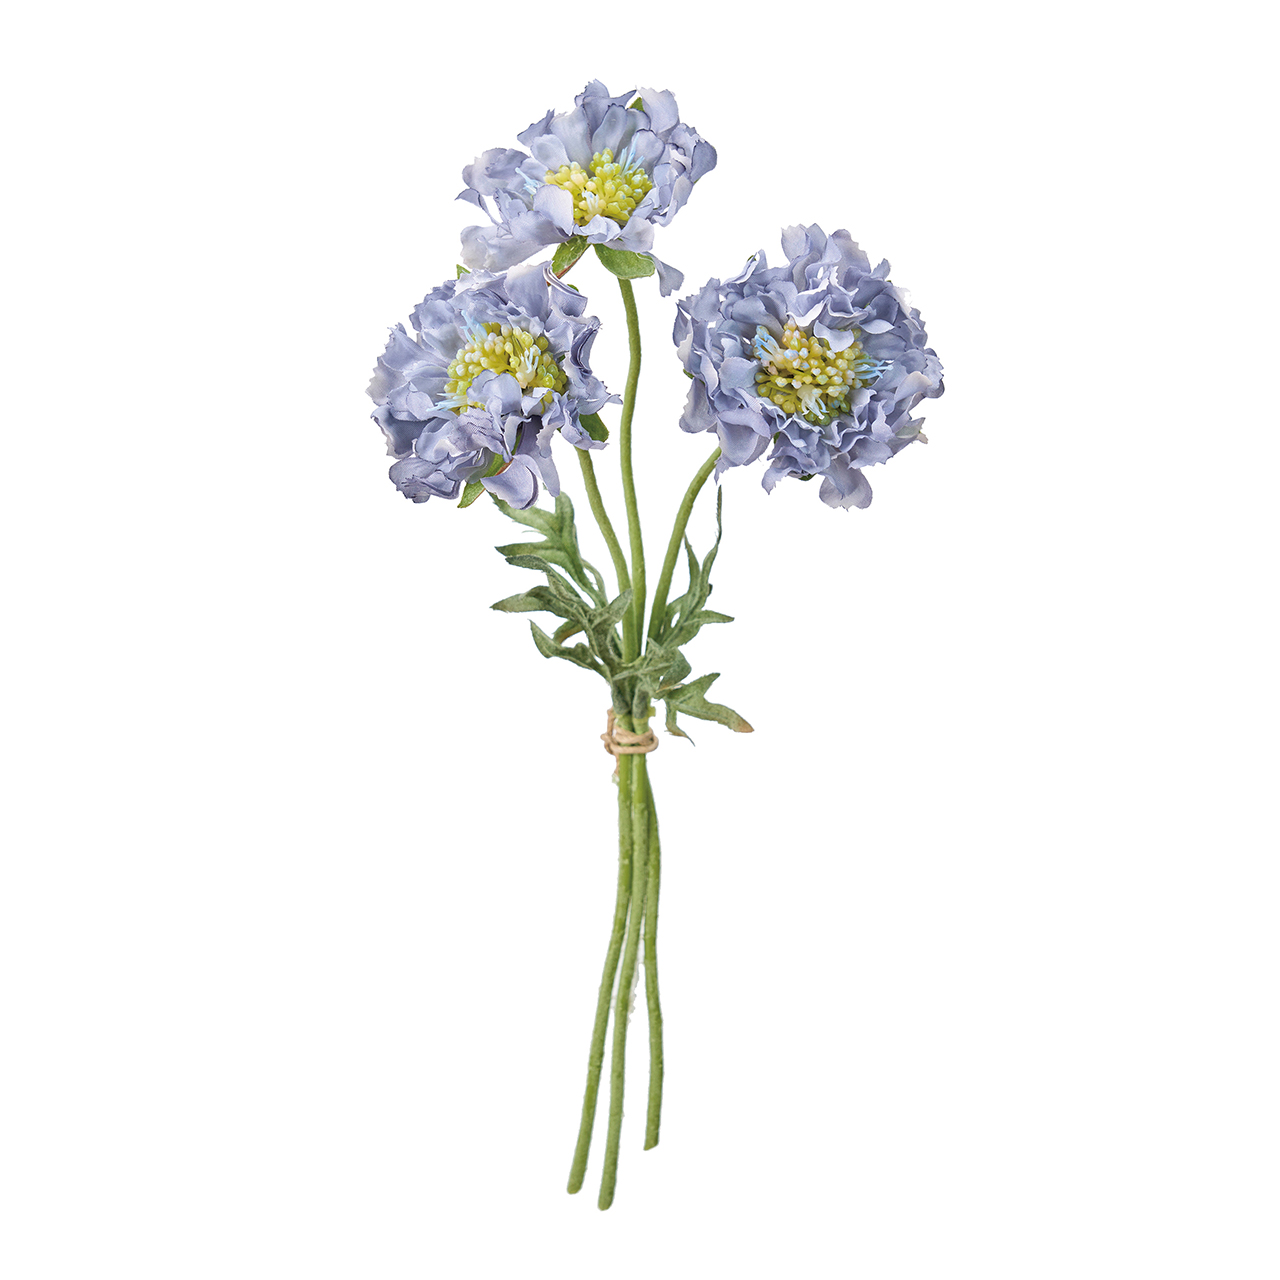 マイフラ】 通販/MAGIQ フリンジスカビオサ グレイッシュブルー アーティフィシャルフラワー 造花 スカビオサ 矢車草 FM009378-015(グレイッシュブルー):  MAGIQ(アーティフィシャルフラワー 造花)/全国にMAGIQ、花器、花資材などをお届けします。